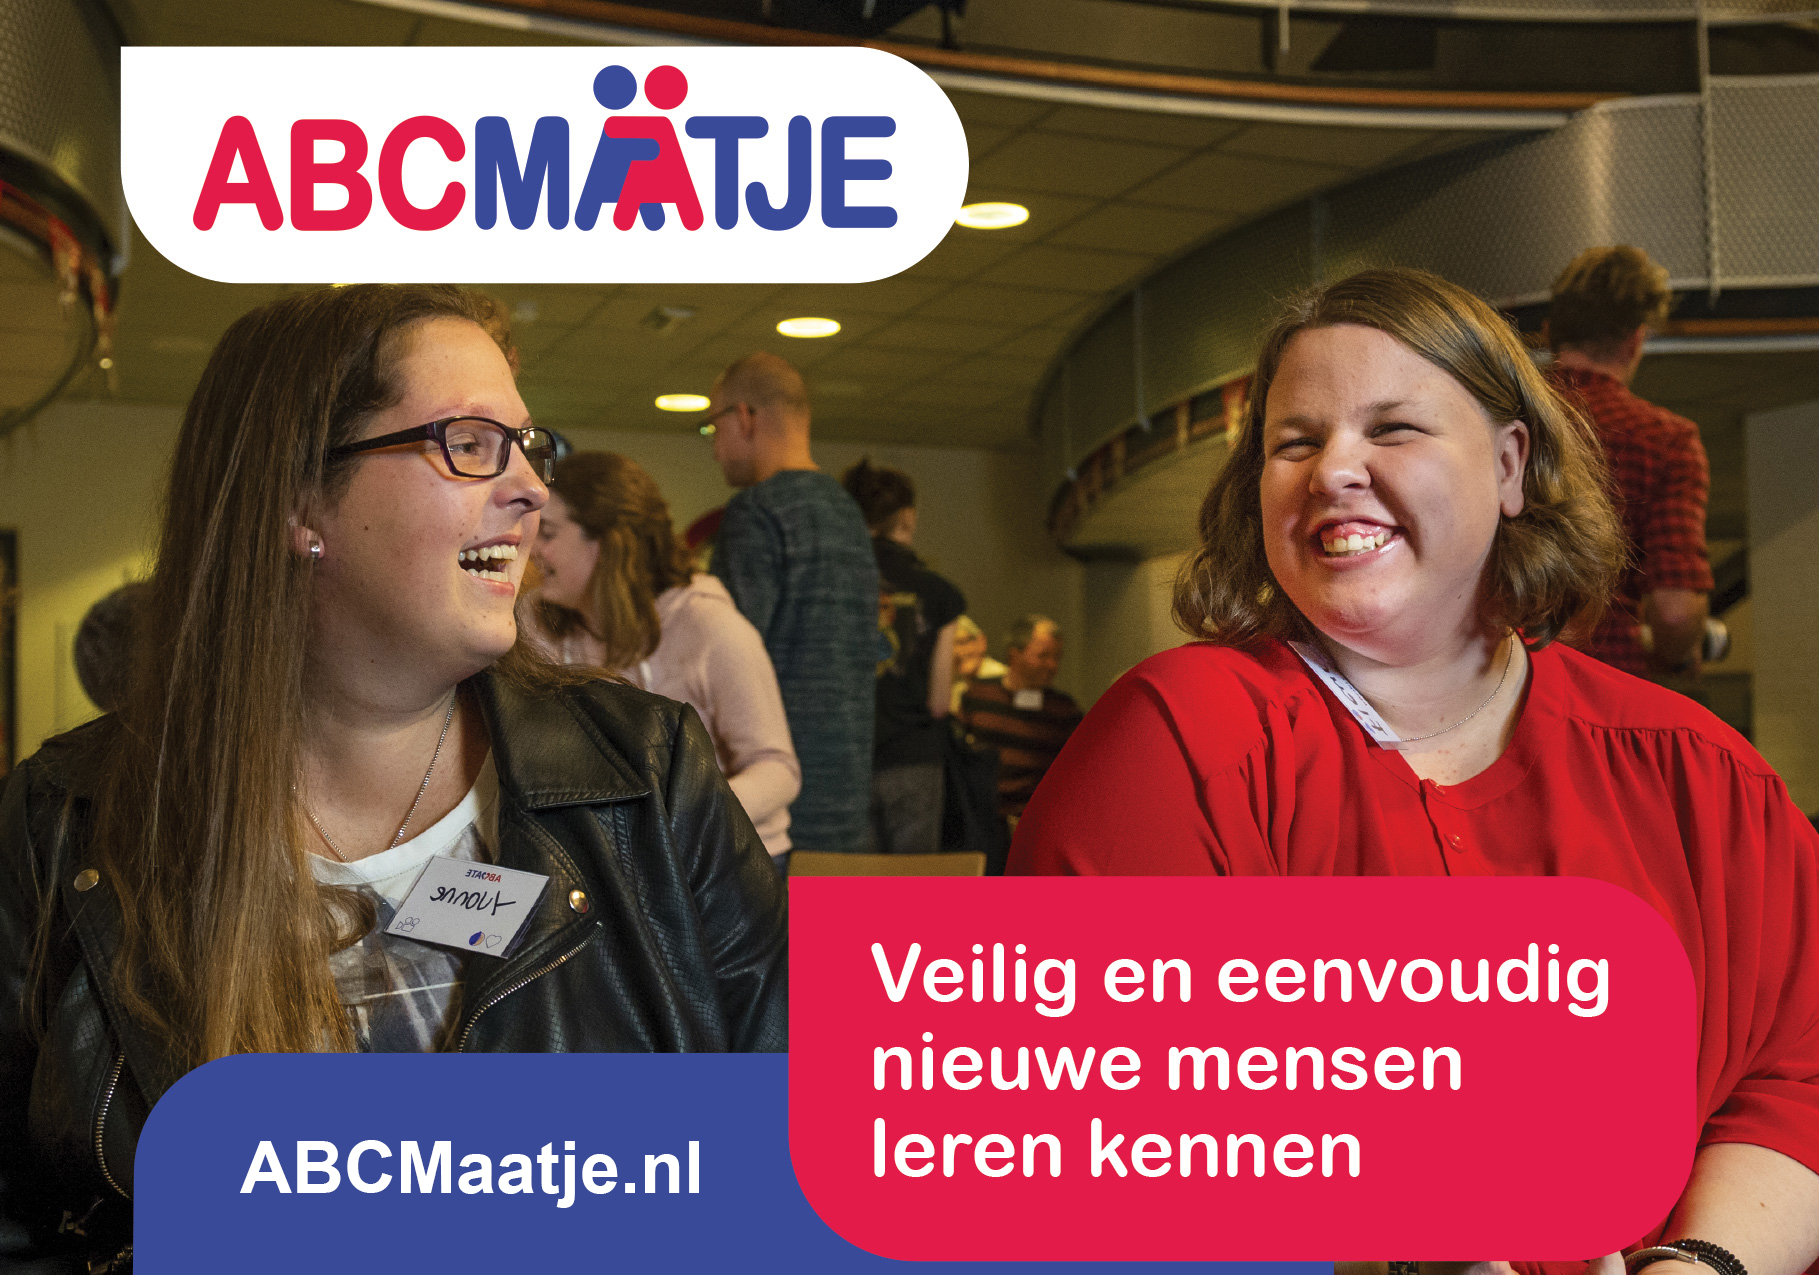 Op ABCMaatje.nl maak je veilig en eenvoudig nieuwe vrienden.